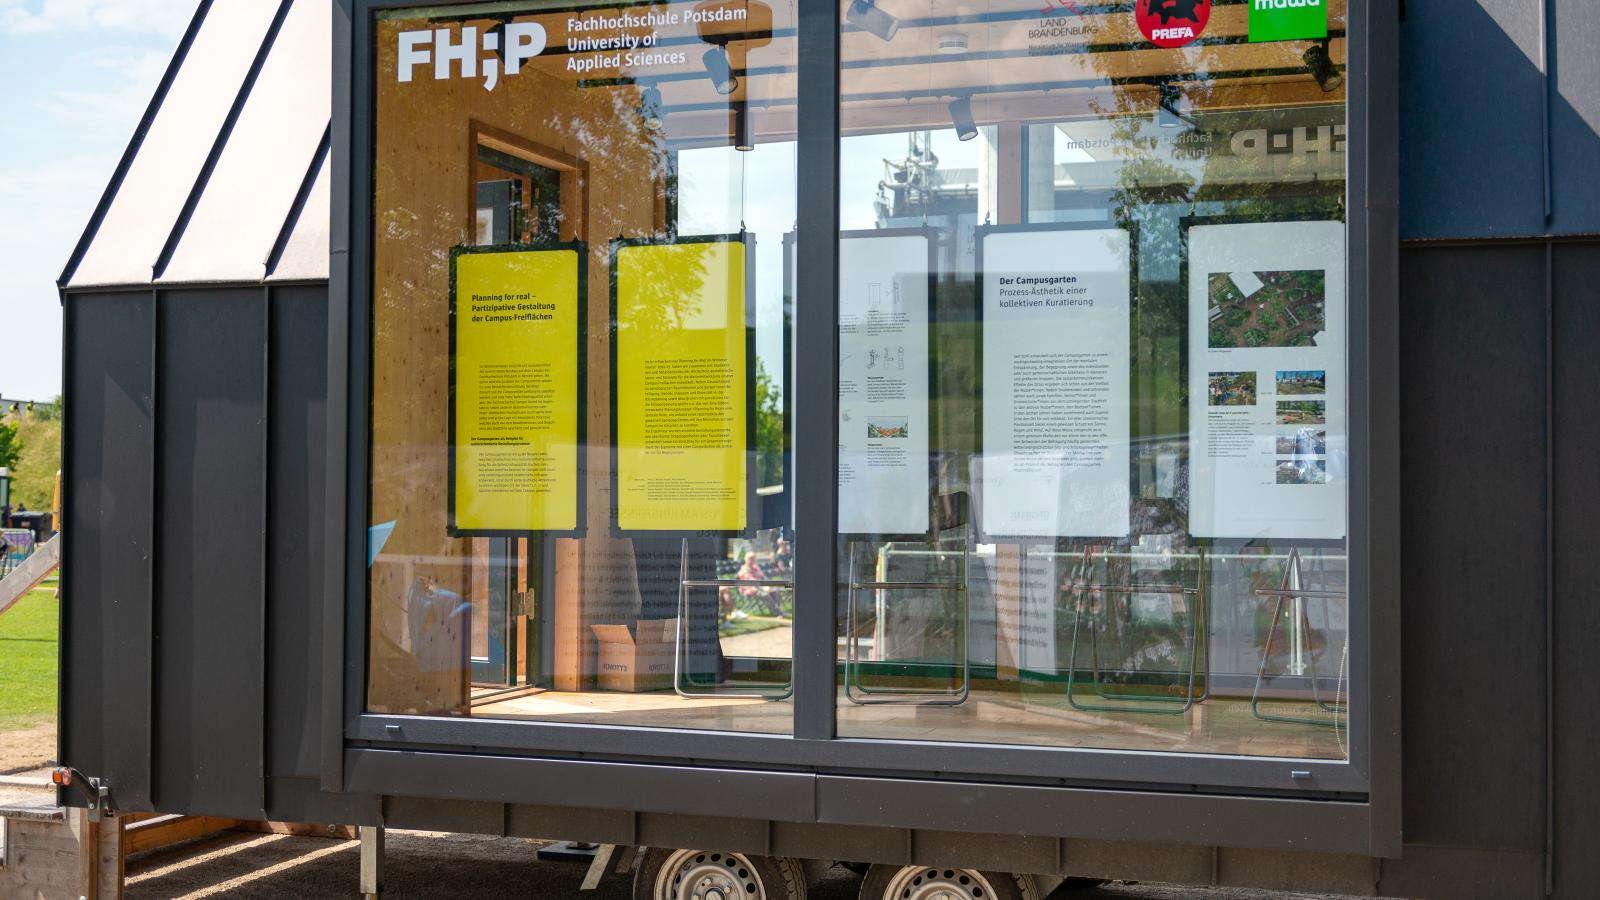 Das FHP Mobil pr?sentiert das Projekt "Planning for real" bei DREISSIG!, dem Fest zum Jubil?um des drei?igj?hrigen Bestehens des Stadtteils Potsdam Bornstedt im Volkspark Potsdam